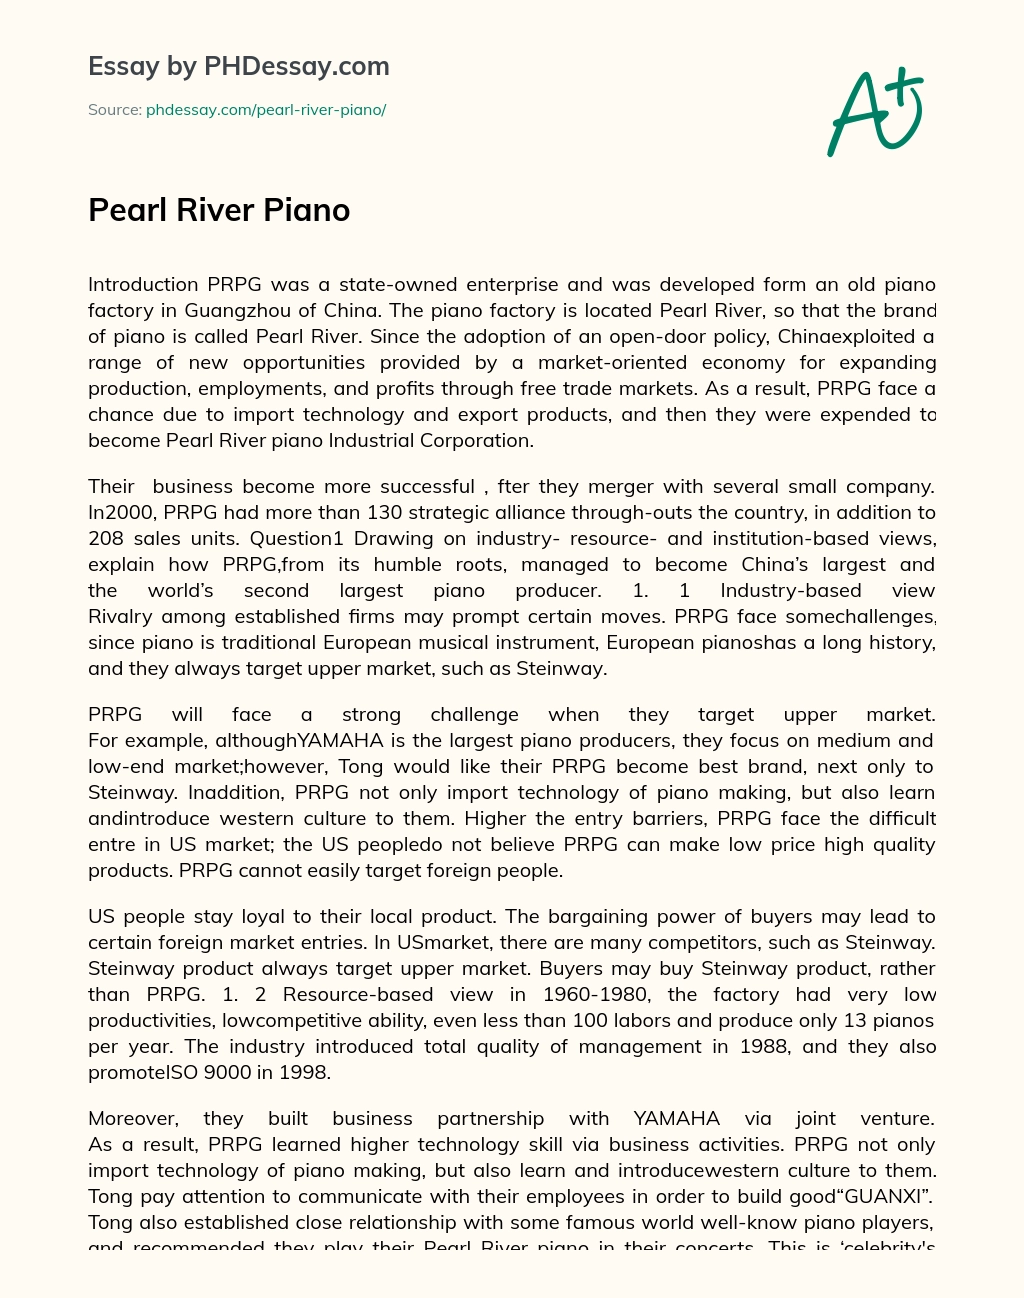 Pearl River Piano essay